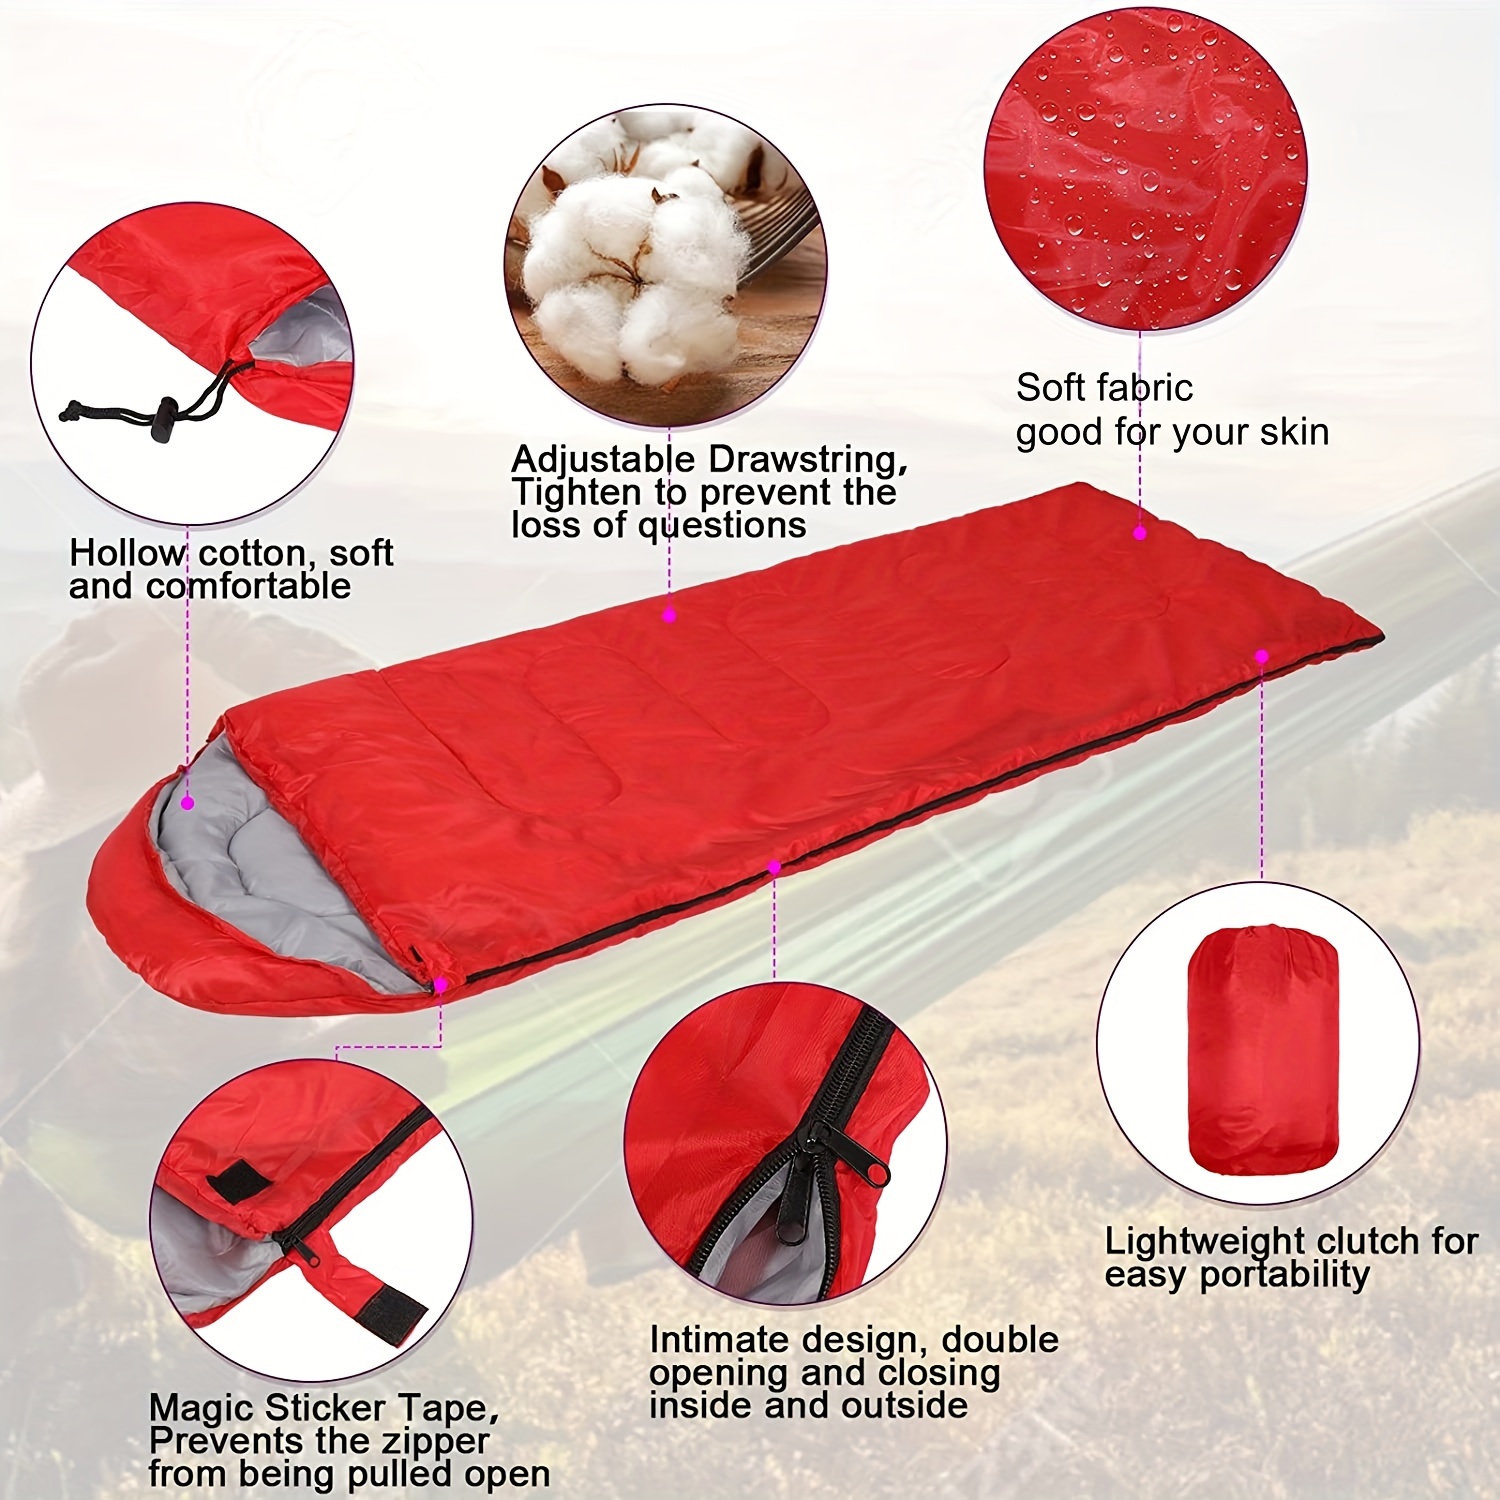  HXR Saco de dormir para acampar, a prueba de calor y frío, para  adultos, saco de dormir para acampar al aire libre, viajes, senderismo, sacos  de dormir (color rojo, tamaño: 82.7x19.7